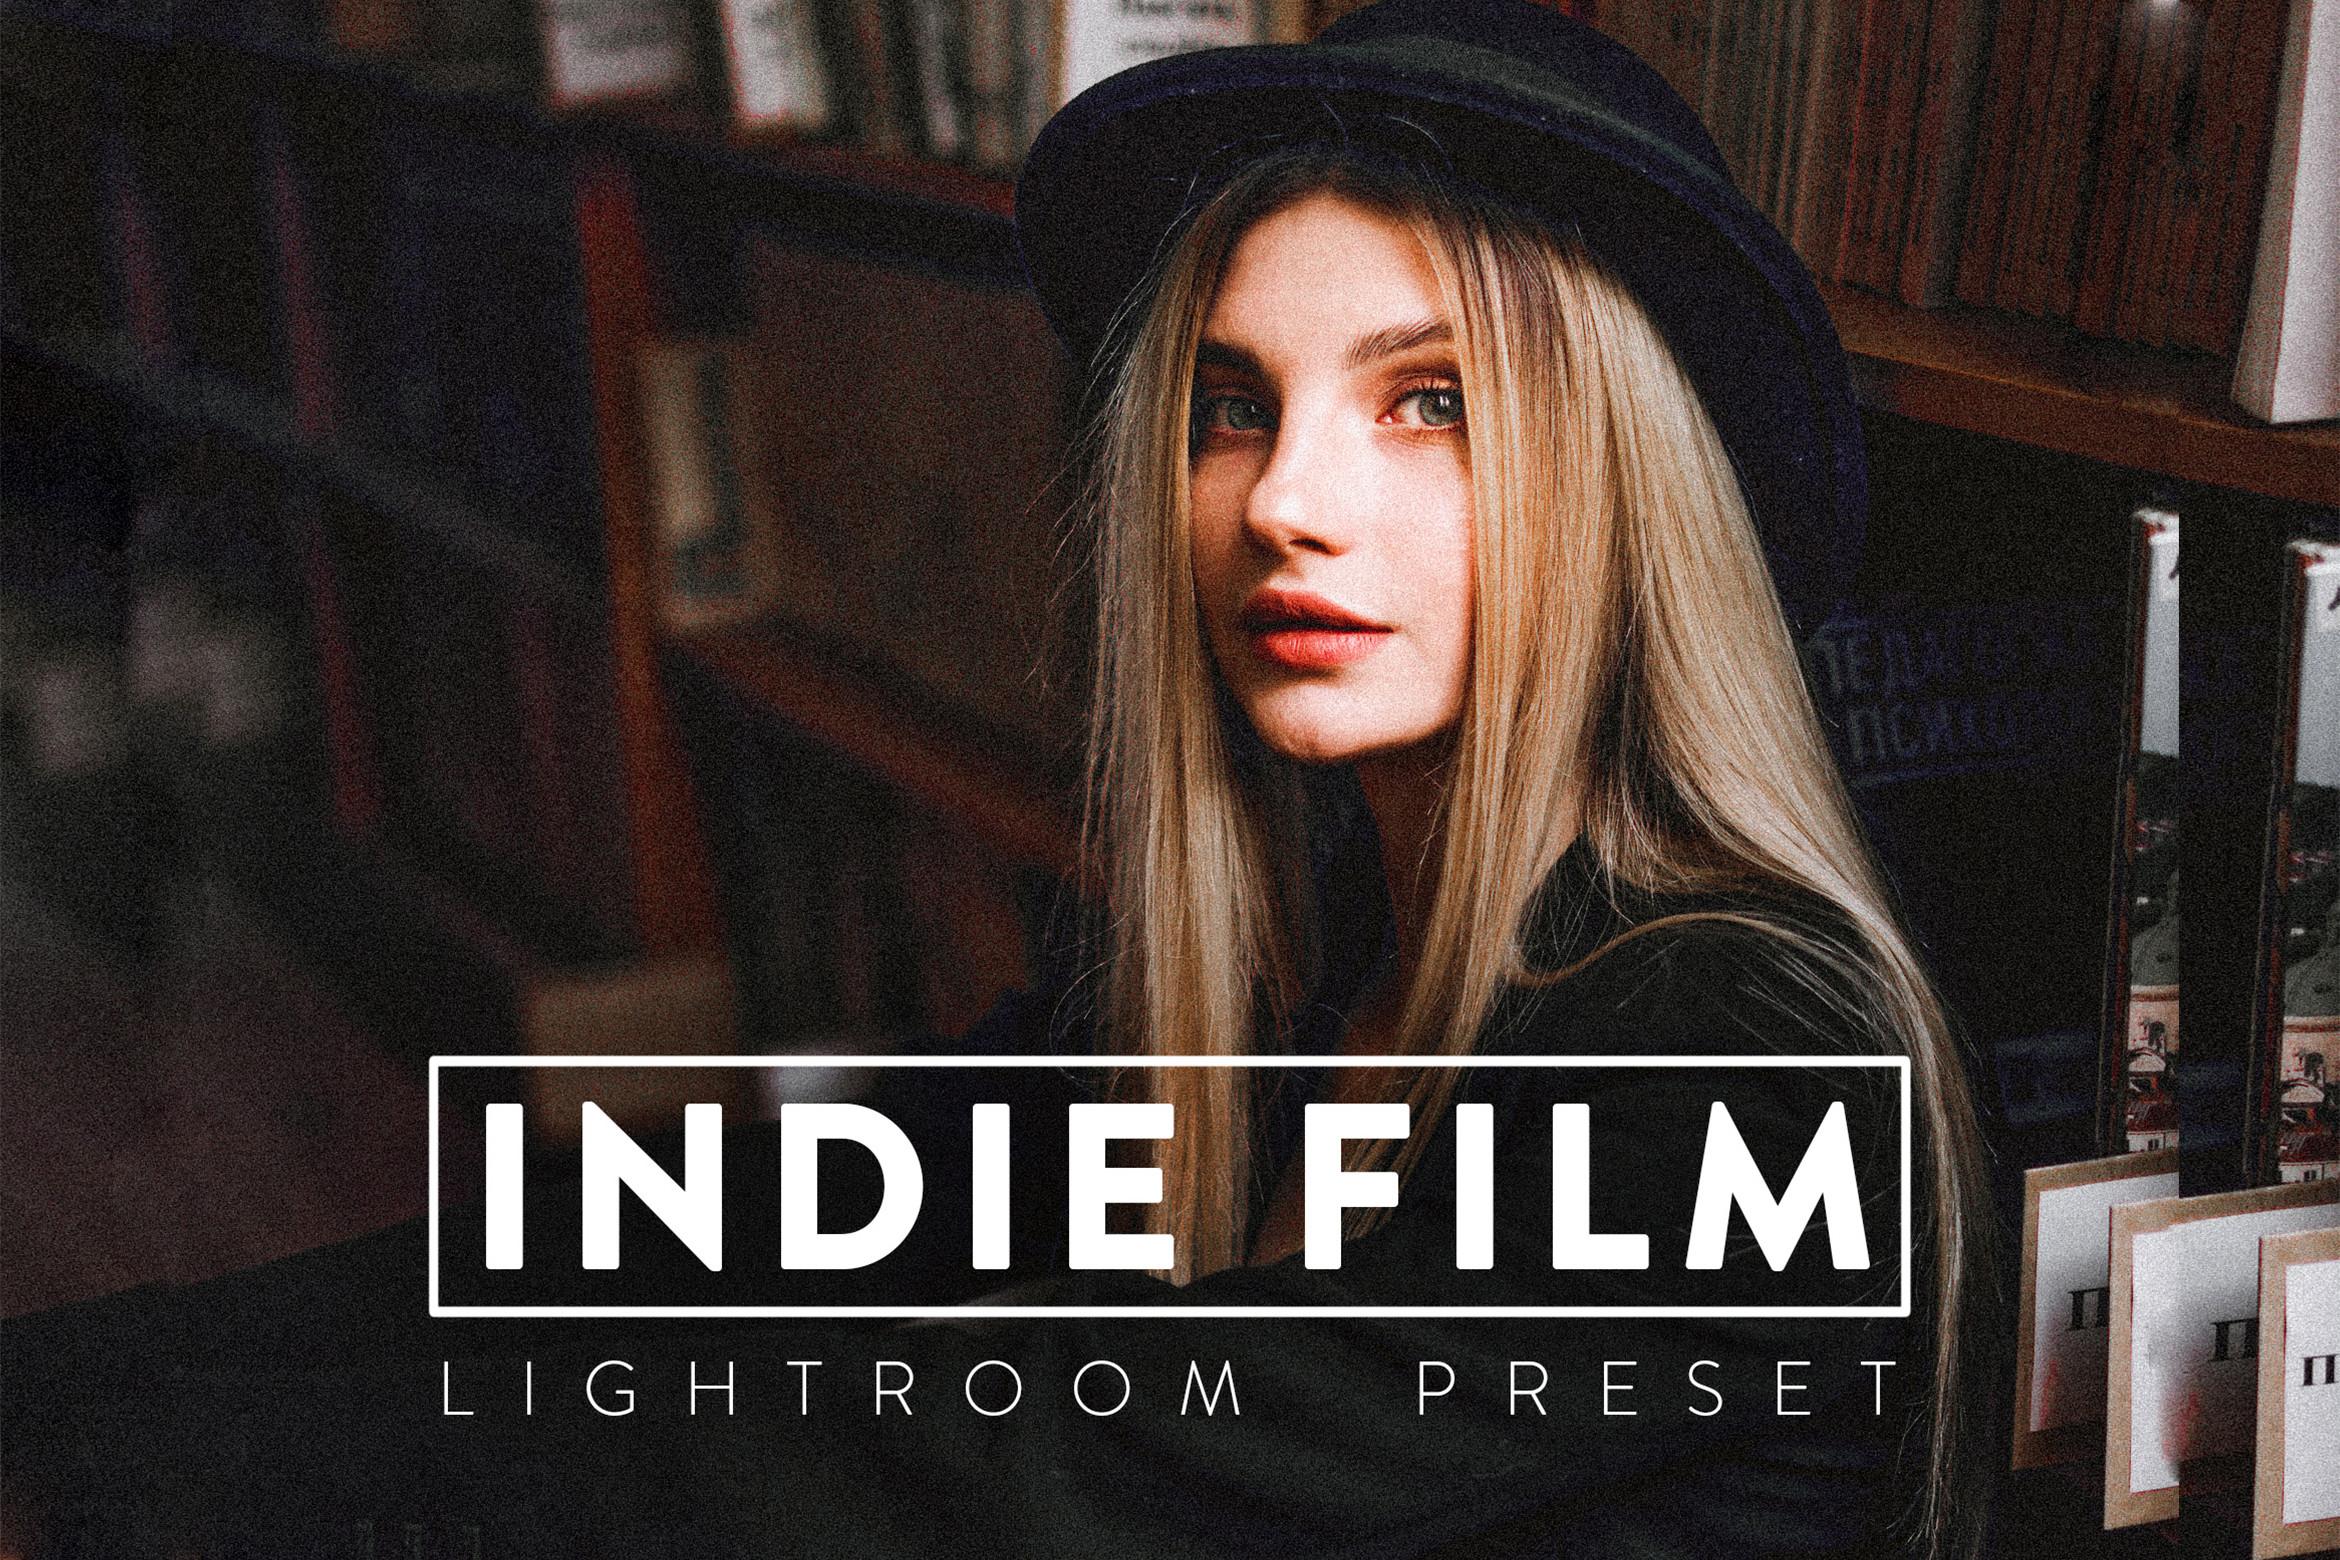 10 Indie Film Lightroom Preset